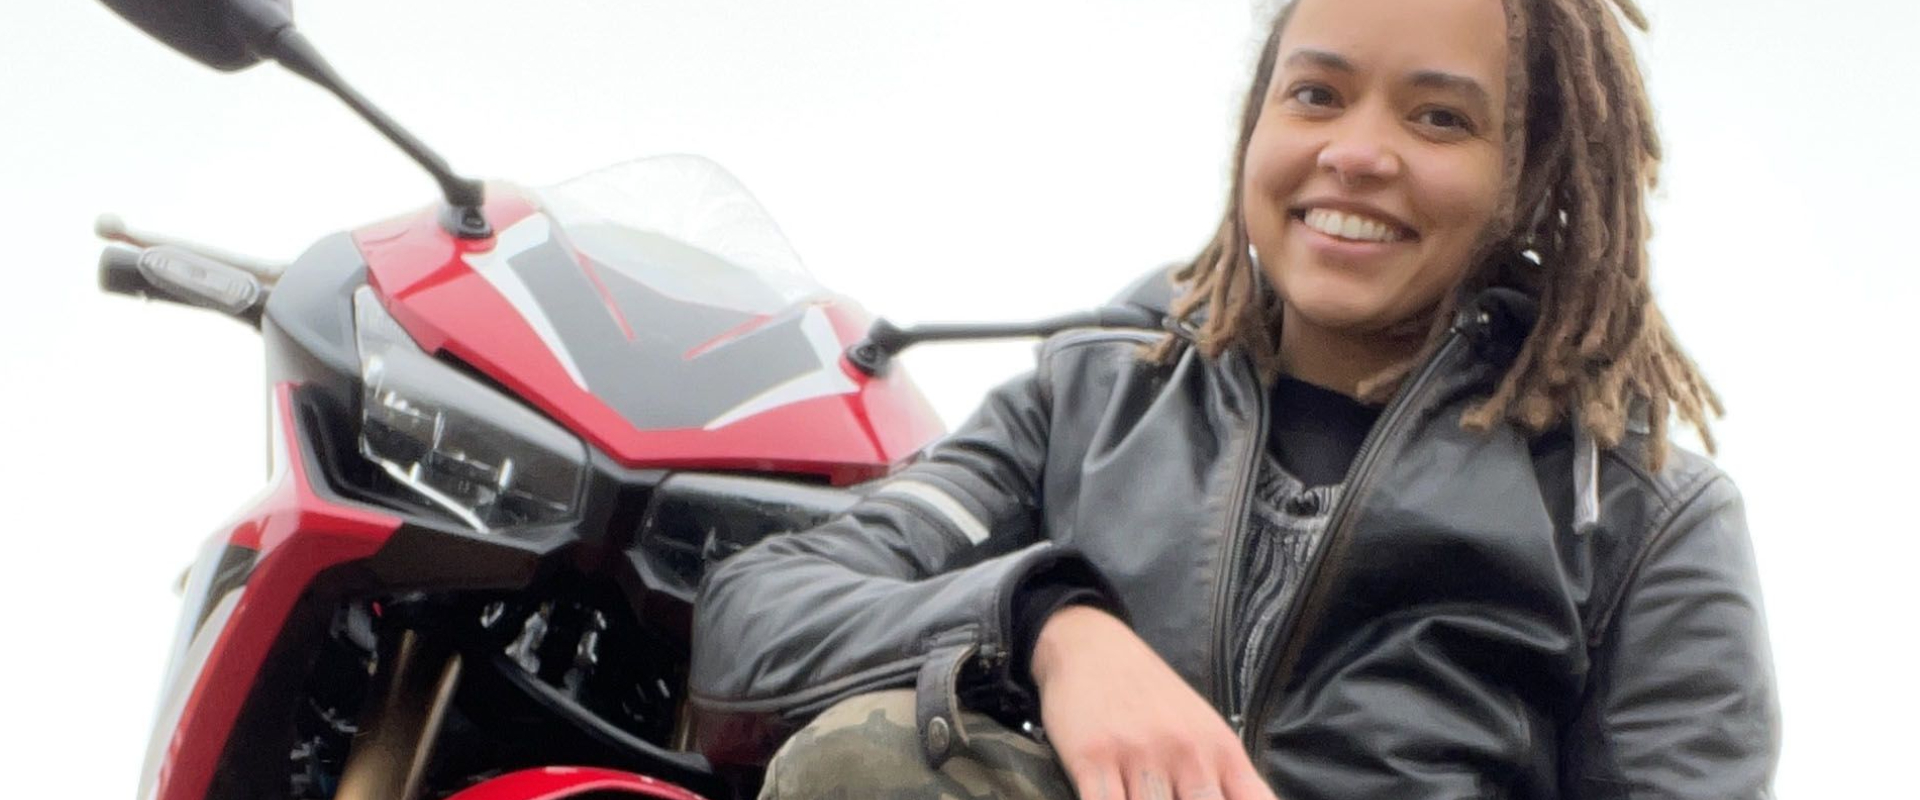 Women in Motorcycling